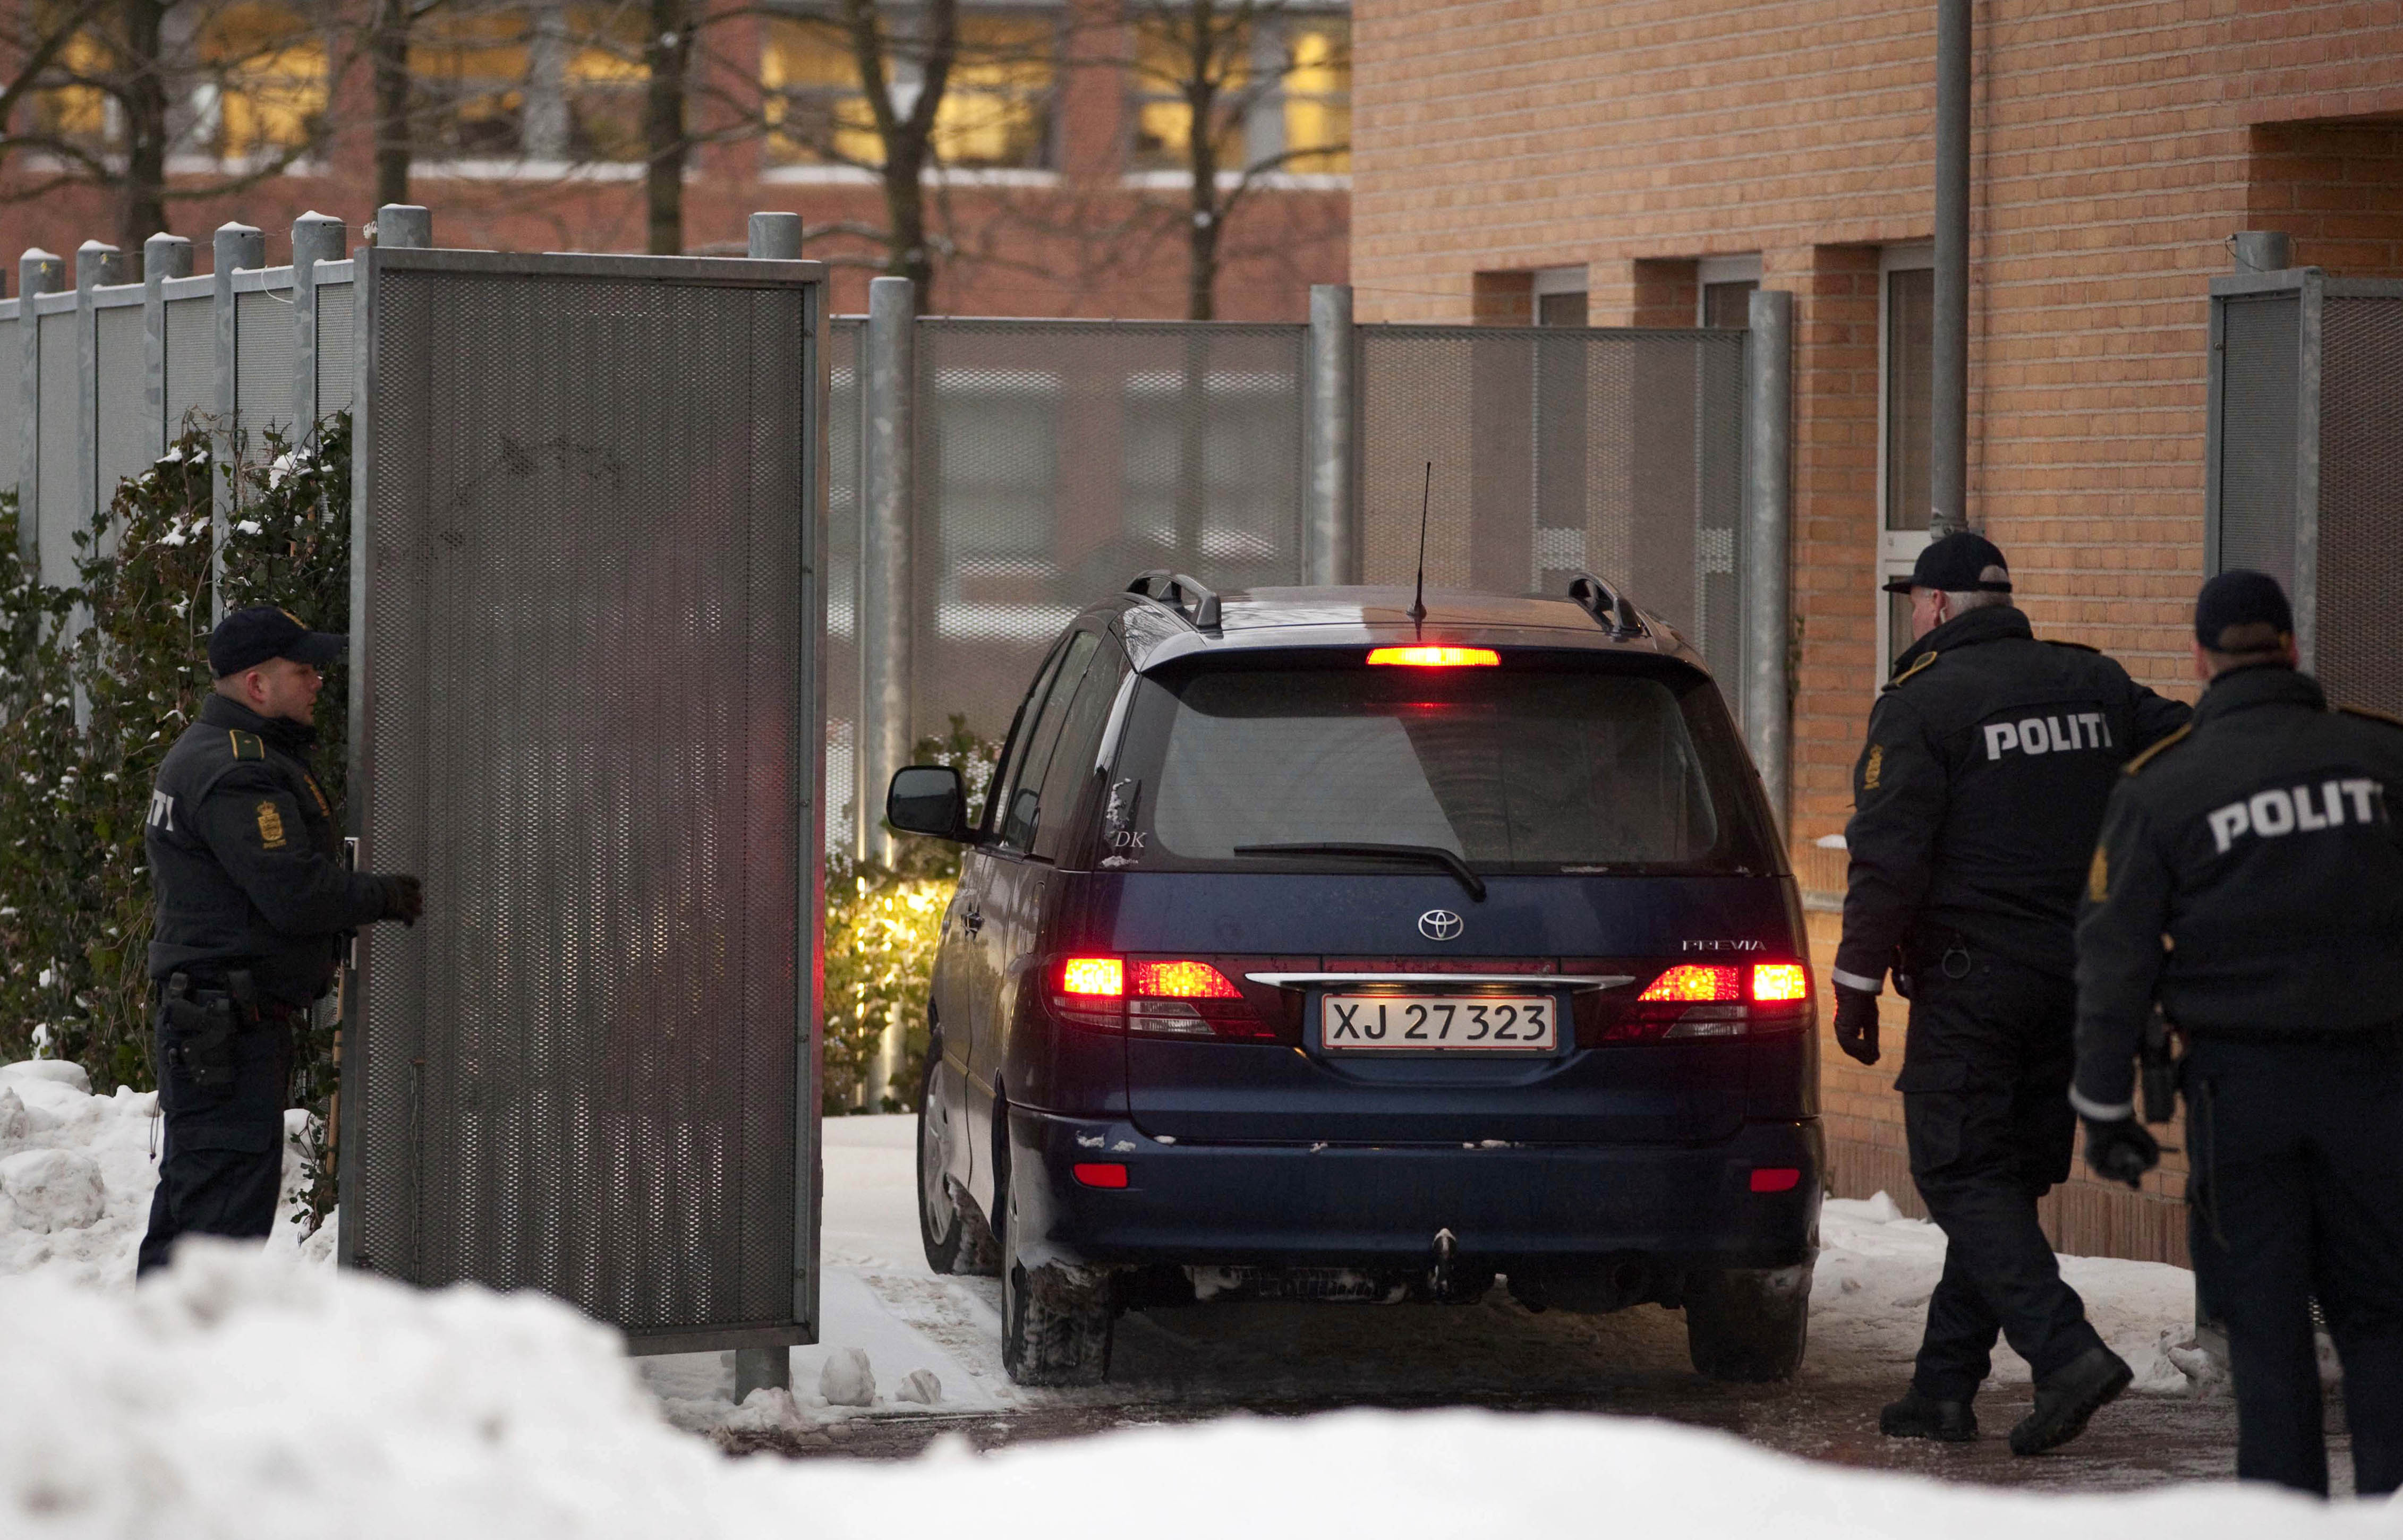 Det var i december 2010 som polisen grep fyra misstänkta terrorister i Köpenhamn.